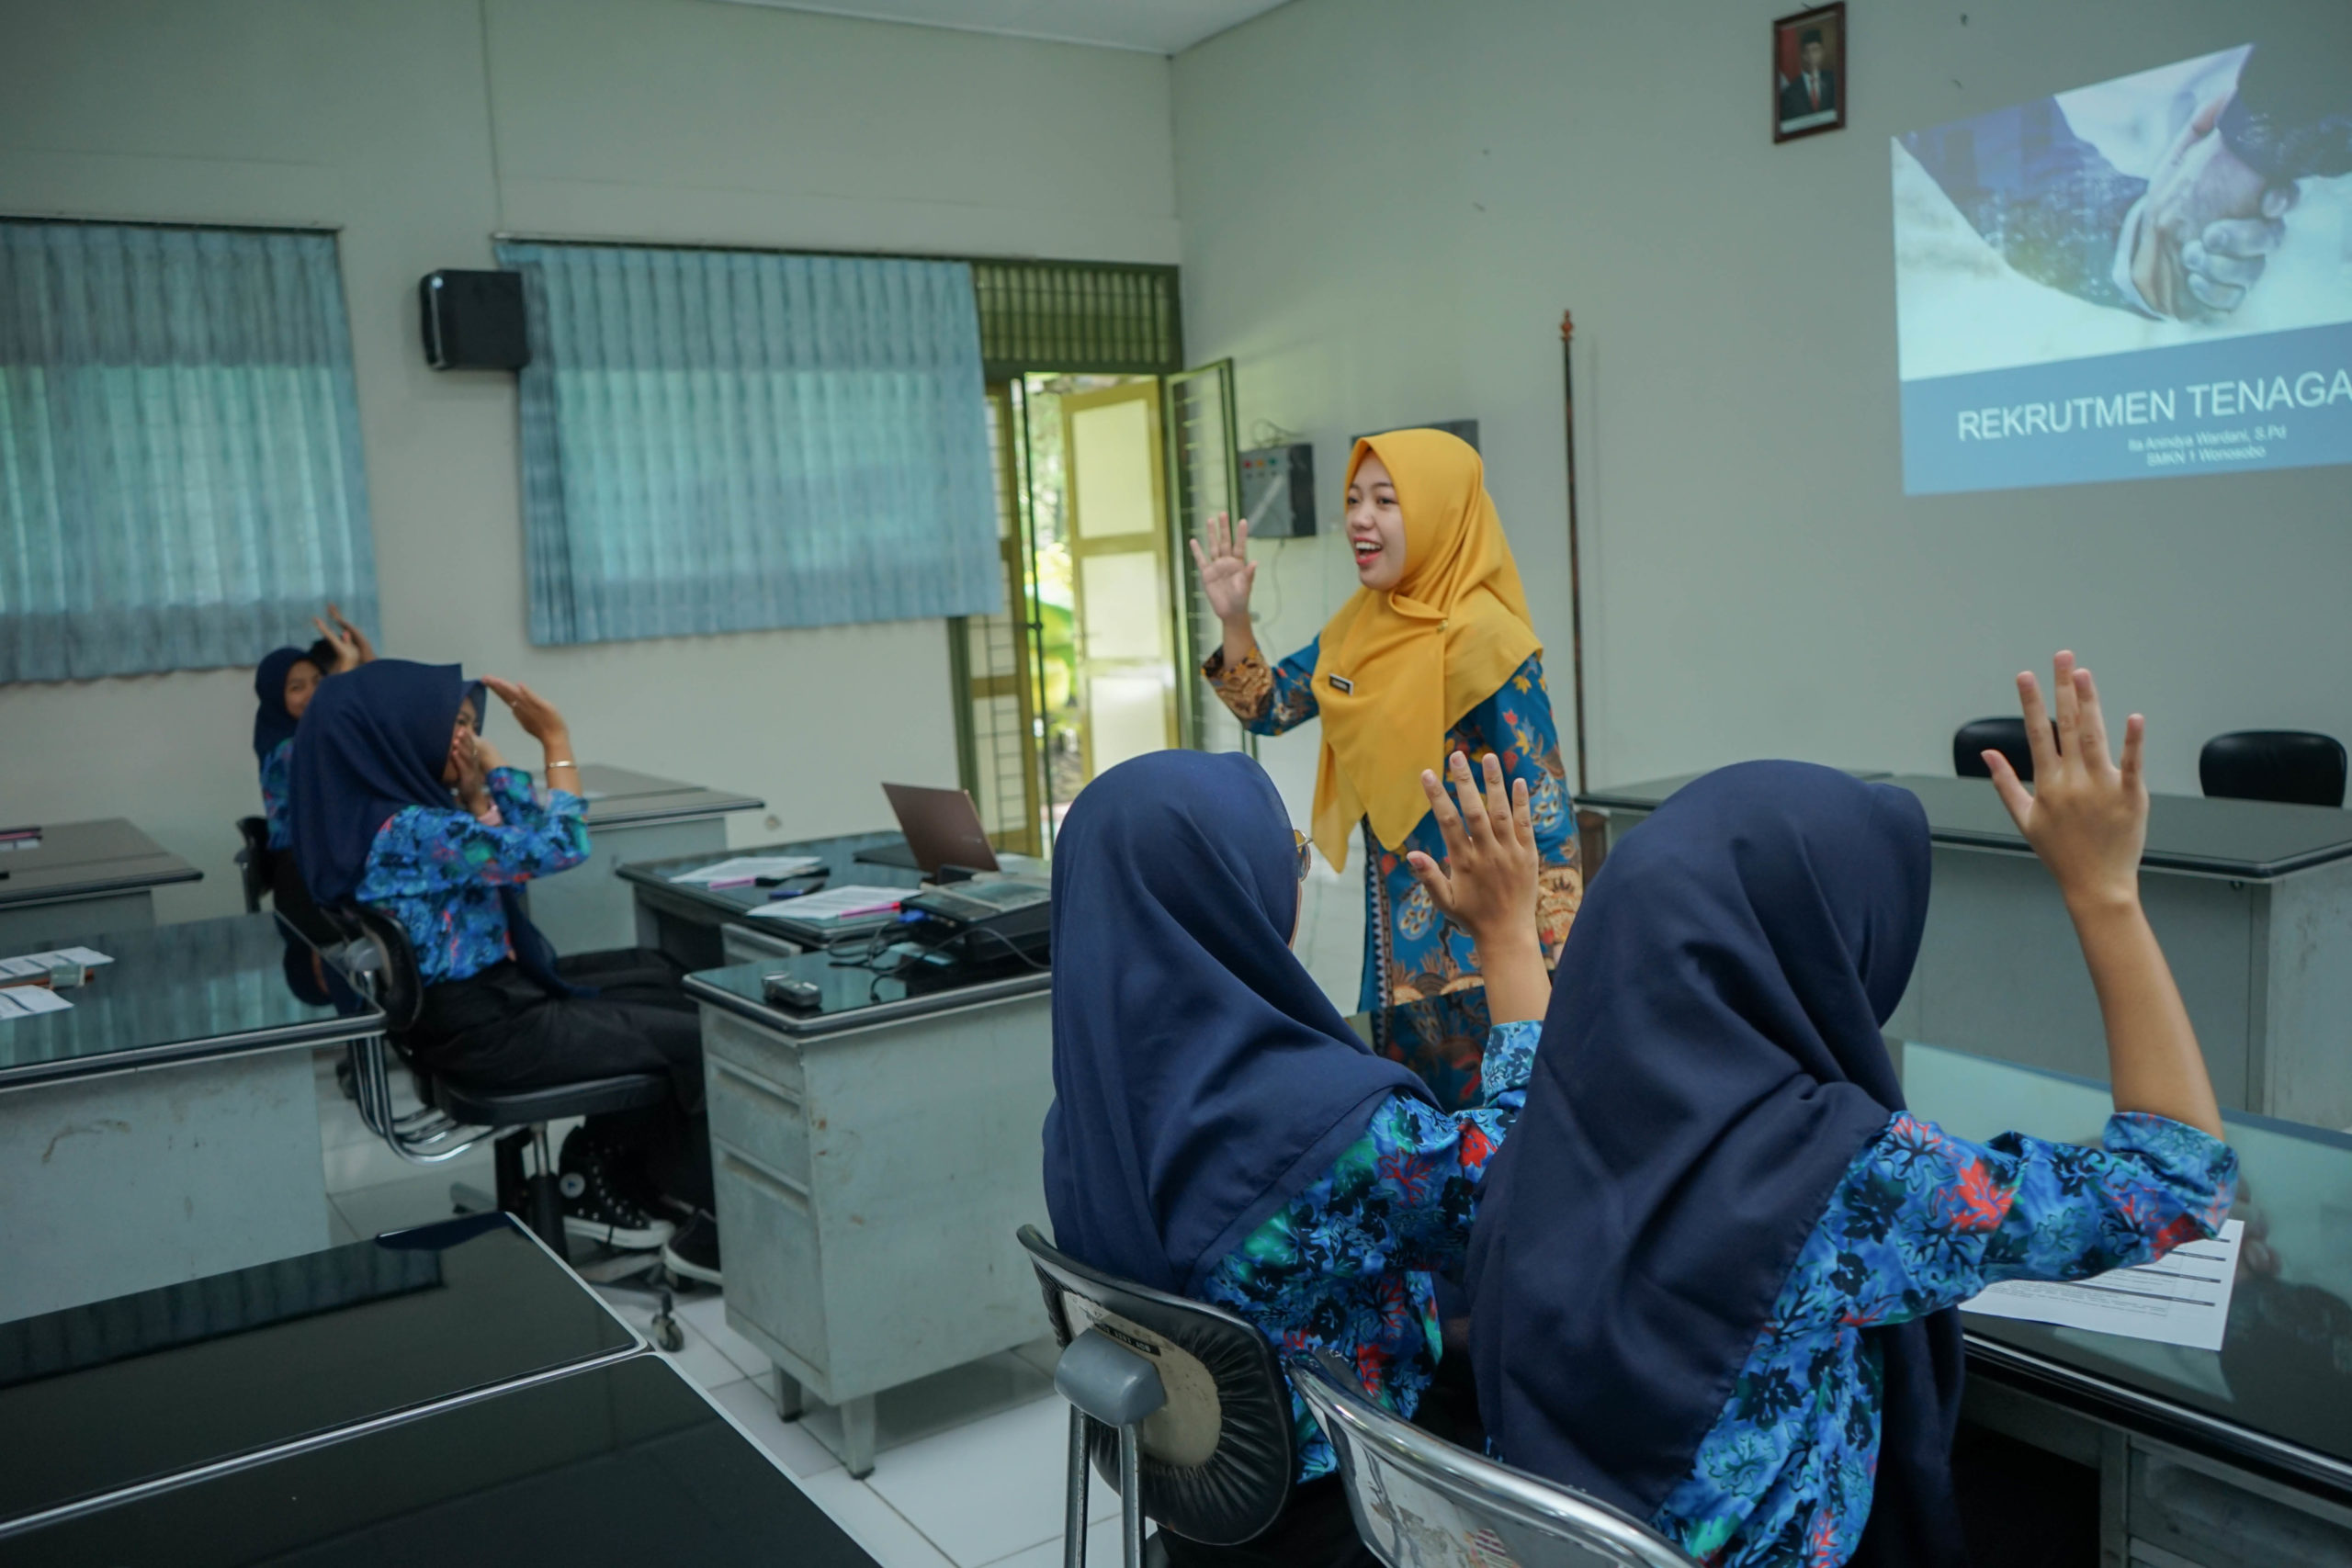 Foto: Ita Anindya saat menyampaikan materi rekrutmen tenaga kerja di SMK Negeri 1 Wonosobo. Sumber: Dokumentasi Yayasan Infest Yogyakarta 2022.